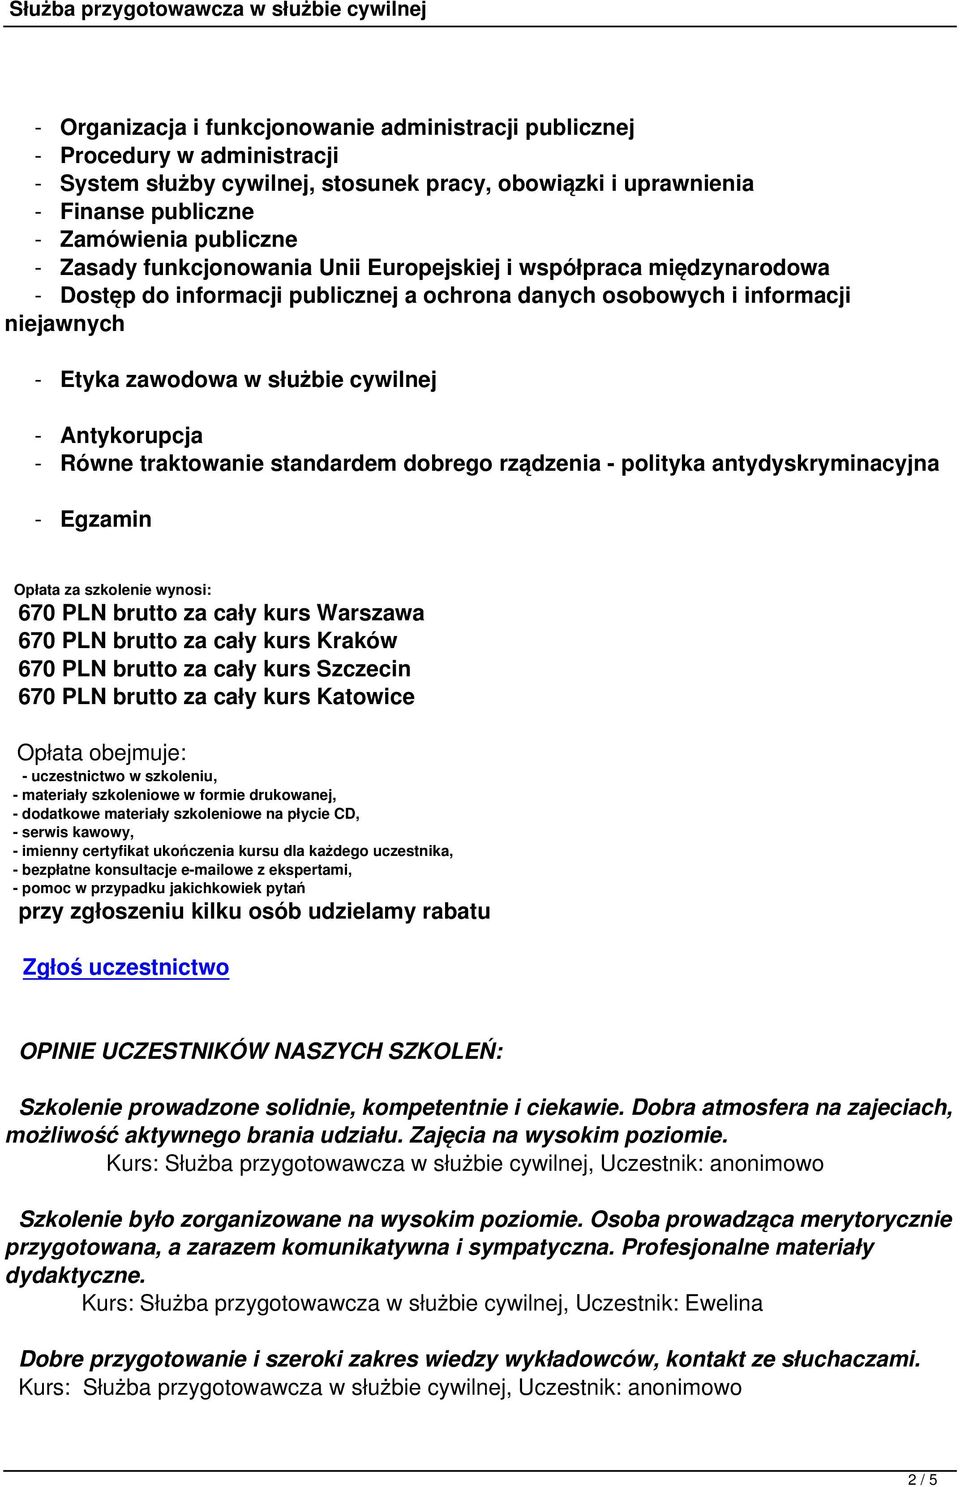 Antykorupcja - Równe traktowanie standardem dobrego rządzenia - polityka antydyskryminacyjna - Egzamin Opłata za szkolenie wynosi: 670 PLN brutto za cały kurs Warszawa 670 PLN brutto za cały kurs